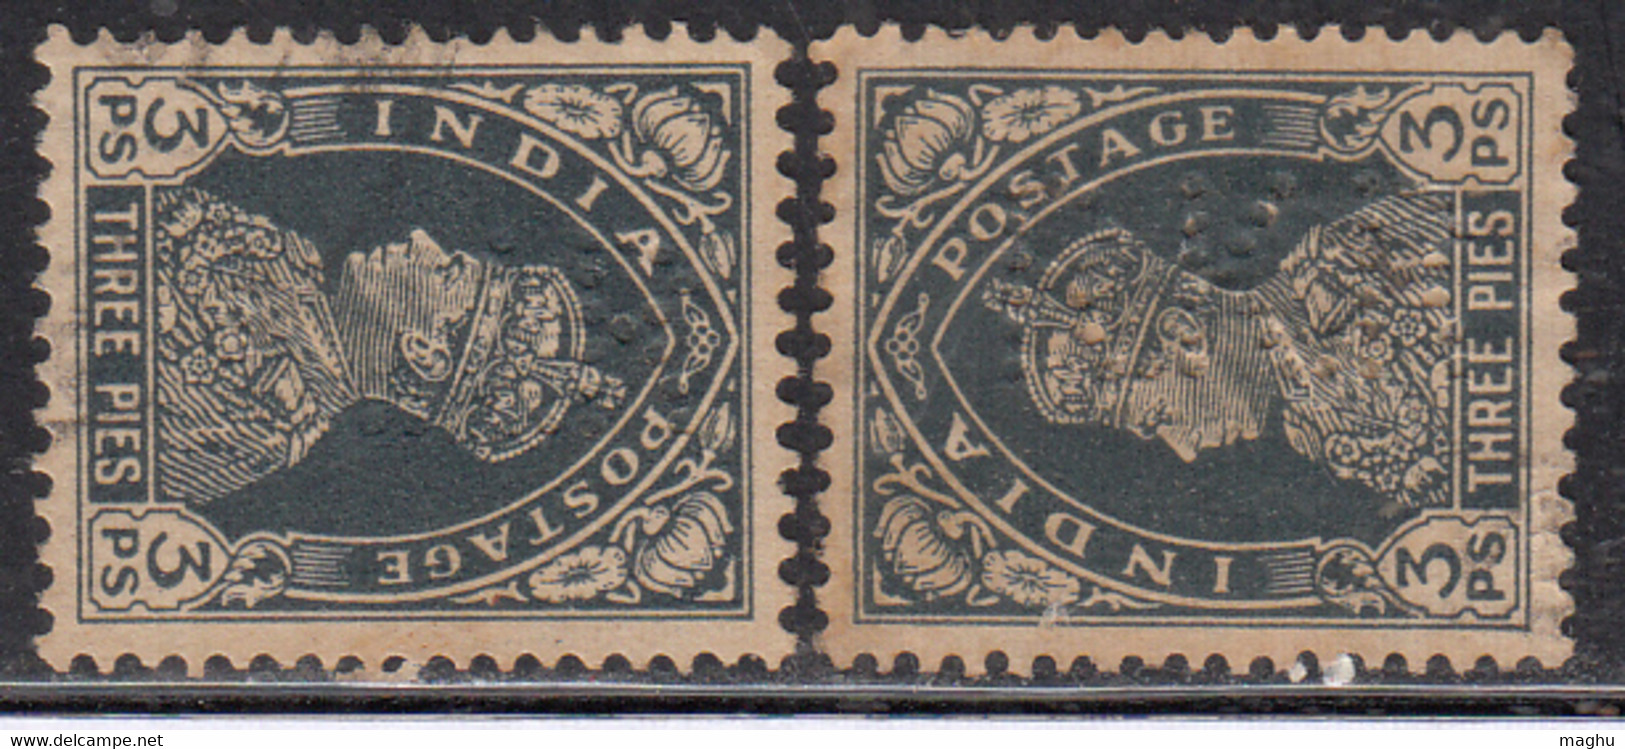 2 Perfin, Perfins, British India 1937 Used - Perforadas